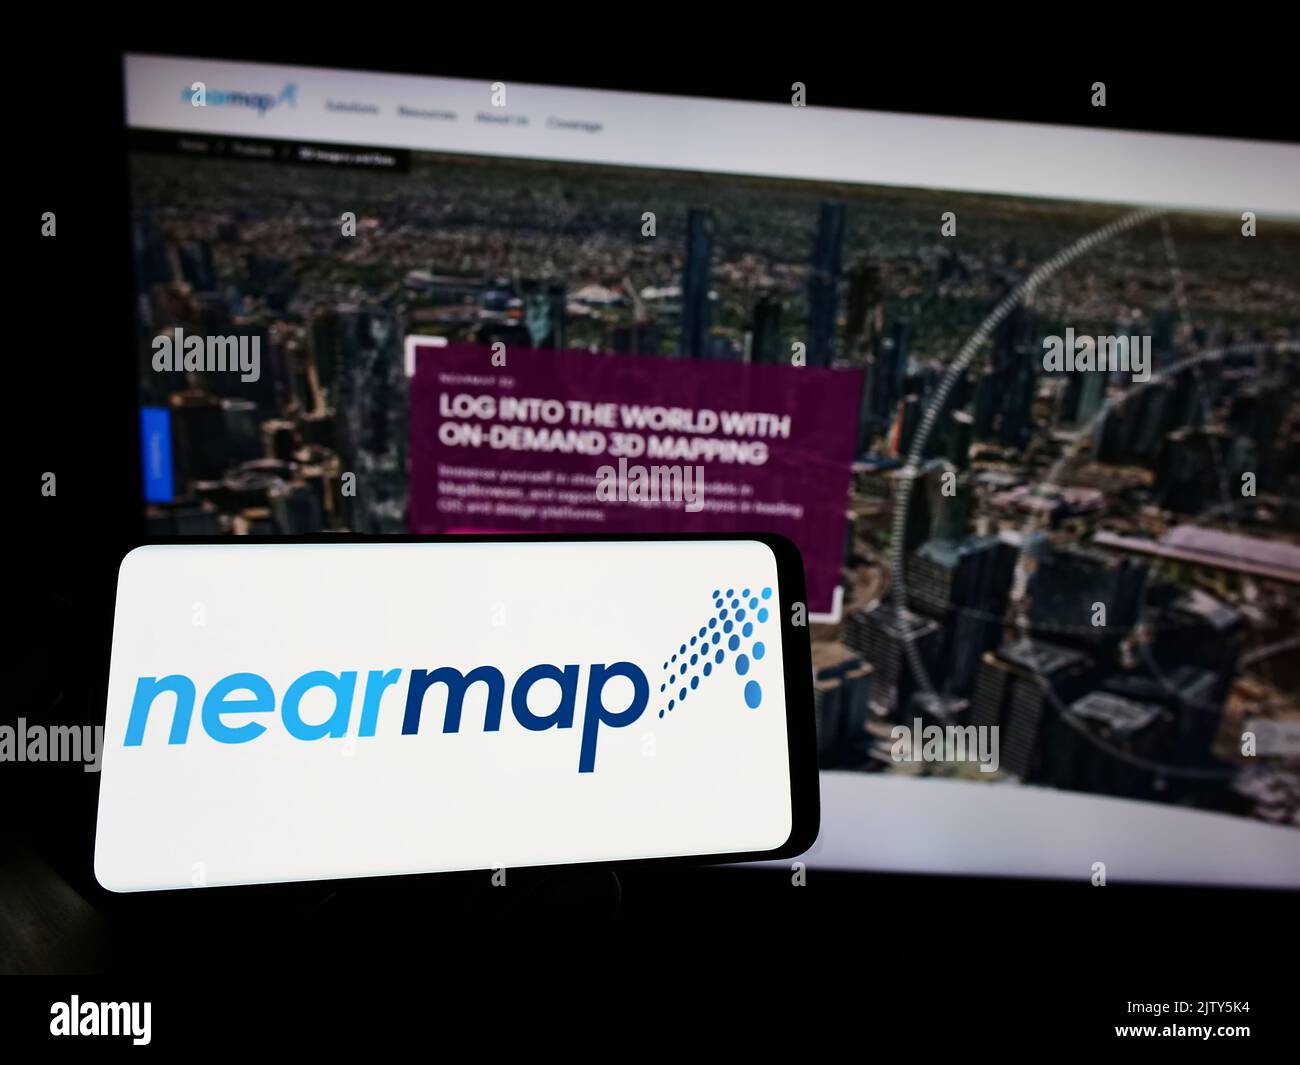 Persona que sostiene el teléfono celular con el logotipo de la compañía de imágenes aéreas Nearmap Limited en la pantalla delante de la página web del negocio. Enfoque la pantalla del teléfono. Foto de stock